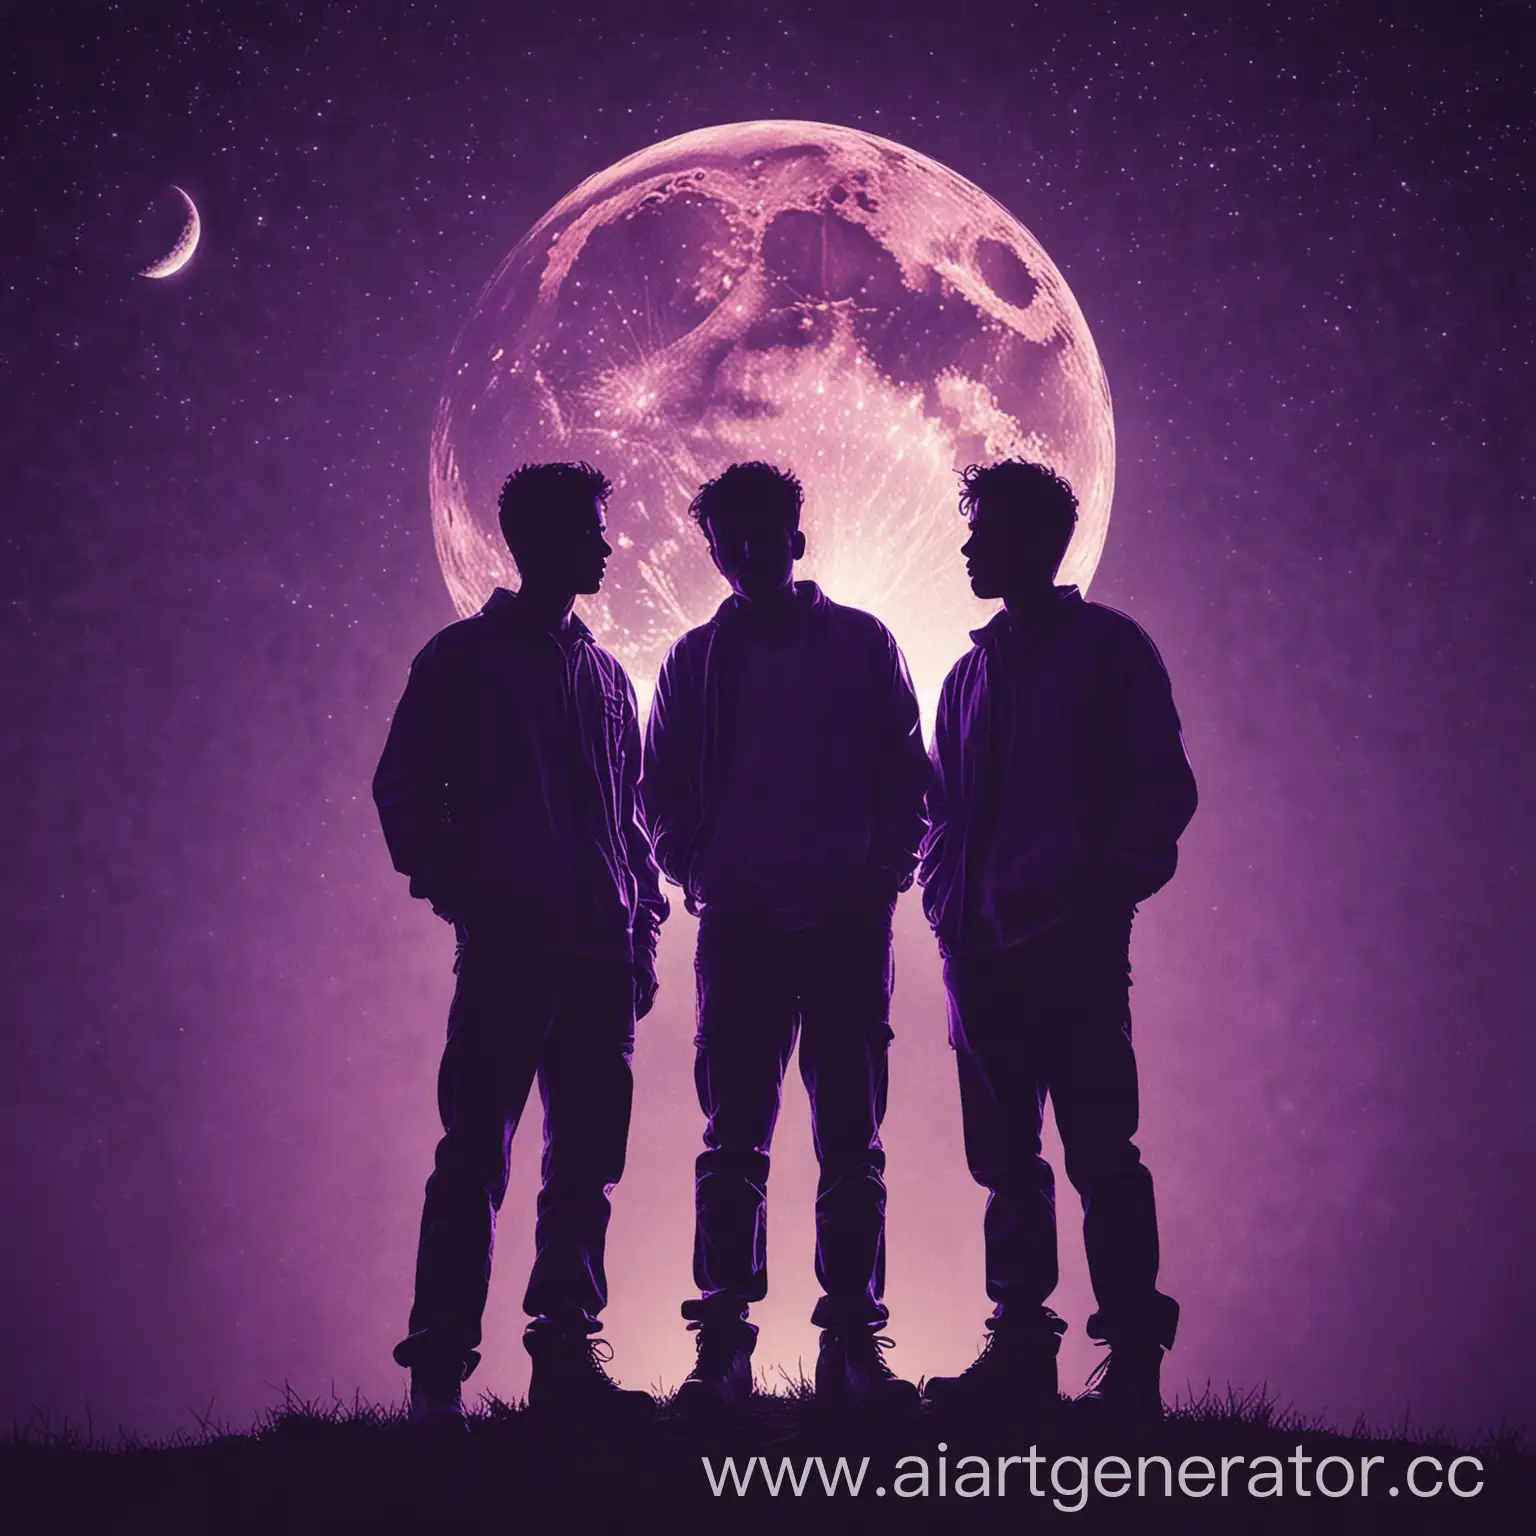 обложка на музыкальный альбом с названием "autotune" фиолетового цвета.на ней изображены  силуэты трех парней и луна 